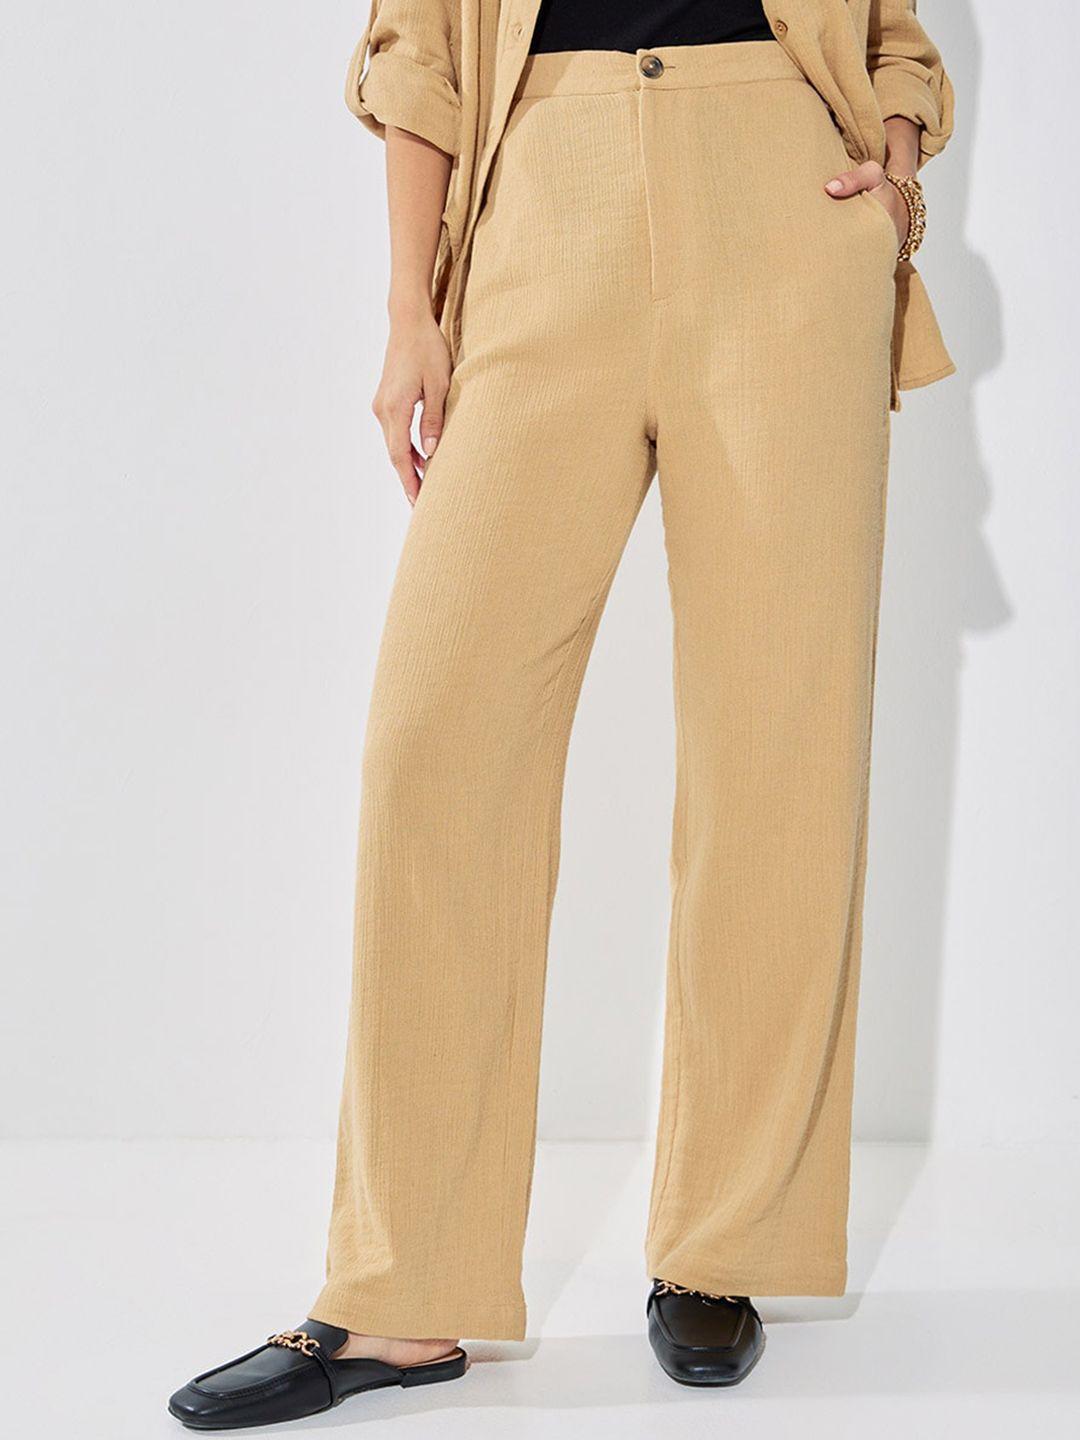 styli-women-high-rise-wide-leg-textured-trouser